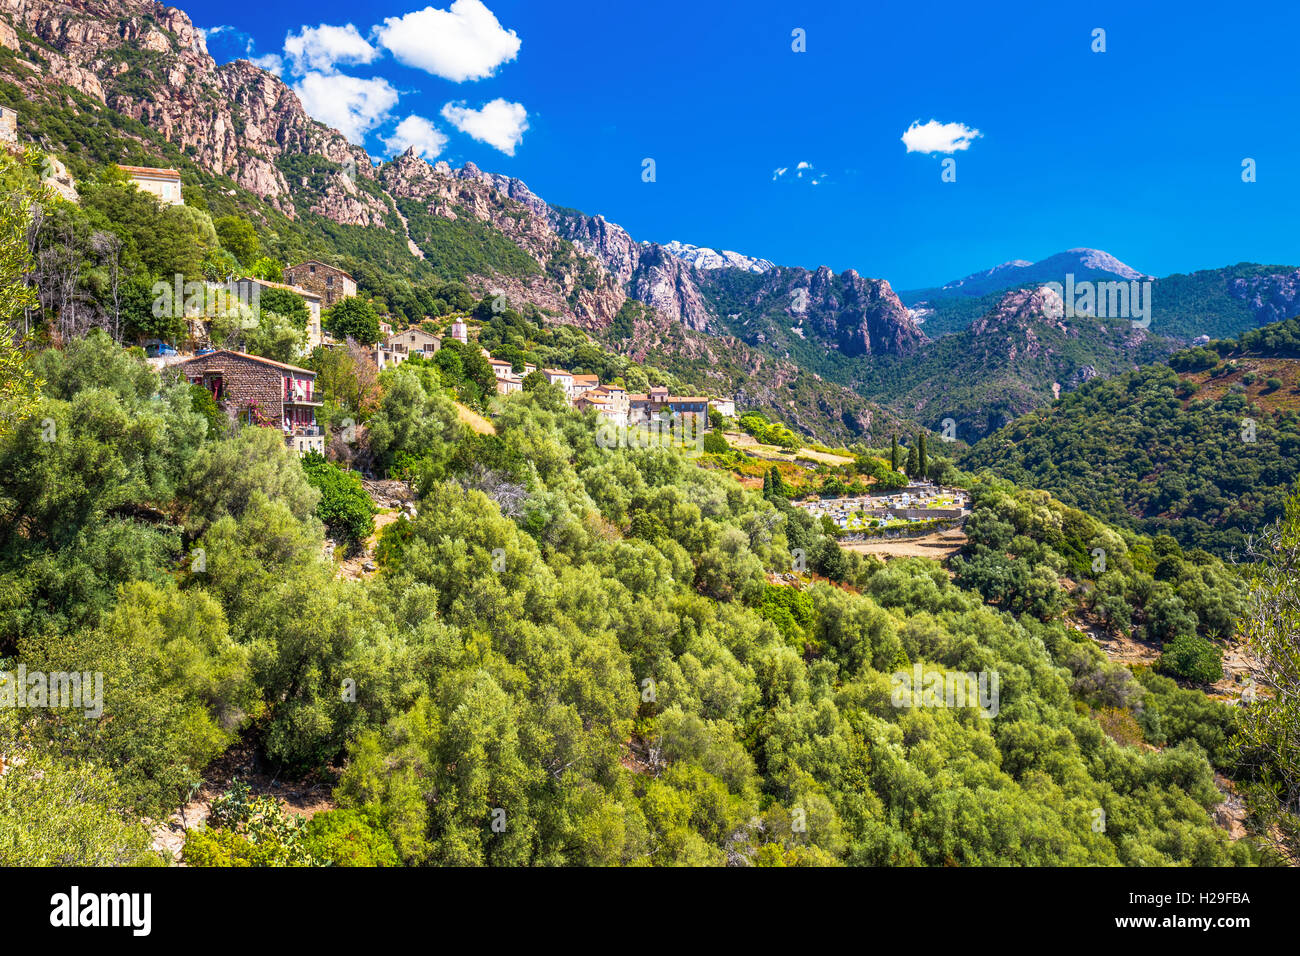 La ville d'Ota avec les montagnes en arrière-plan, près de Porto et Evisa, Corse, France. Banque D'Images